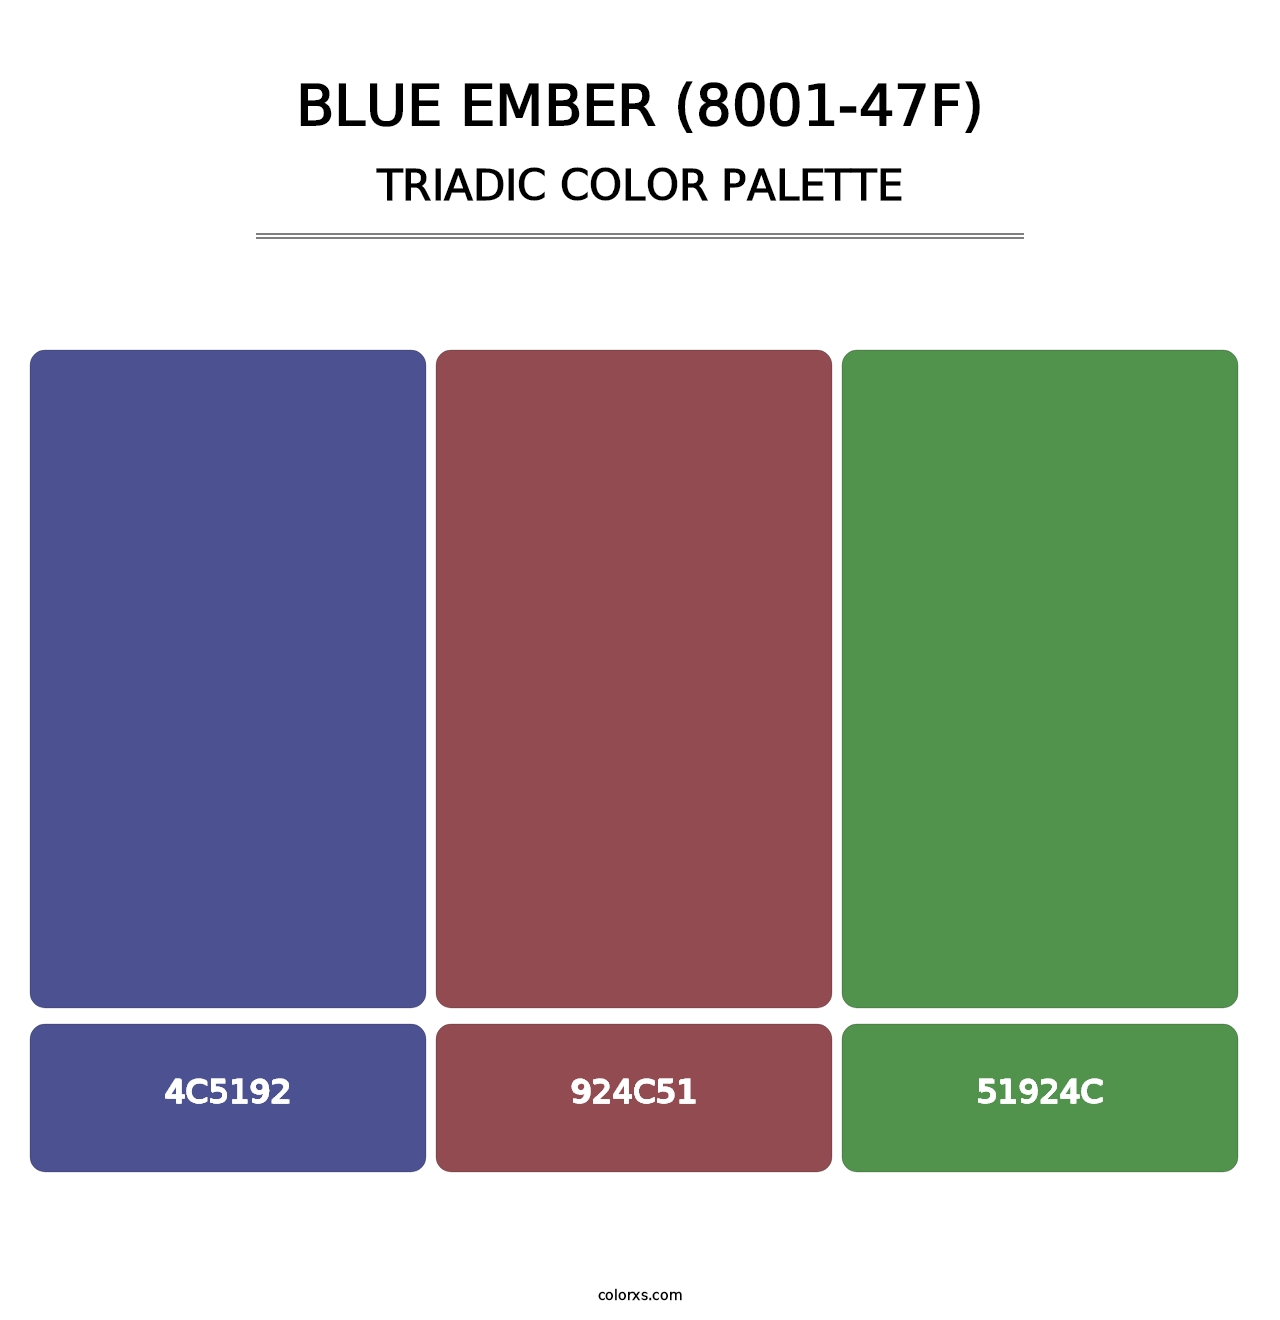 Blue Ember (8001-47F) - Triadic Color Palette